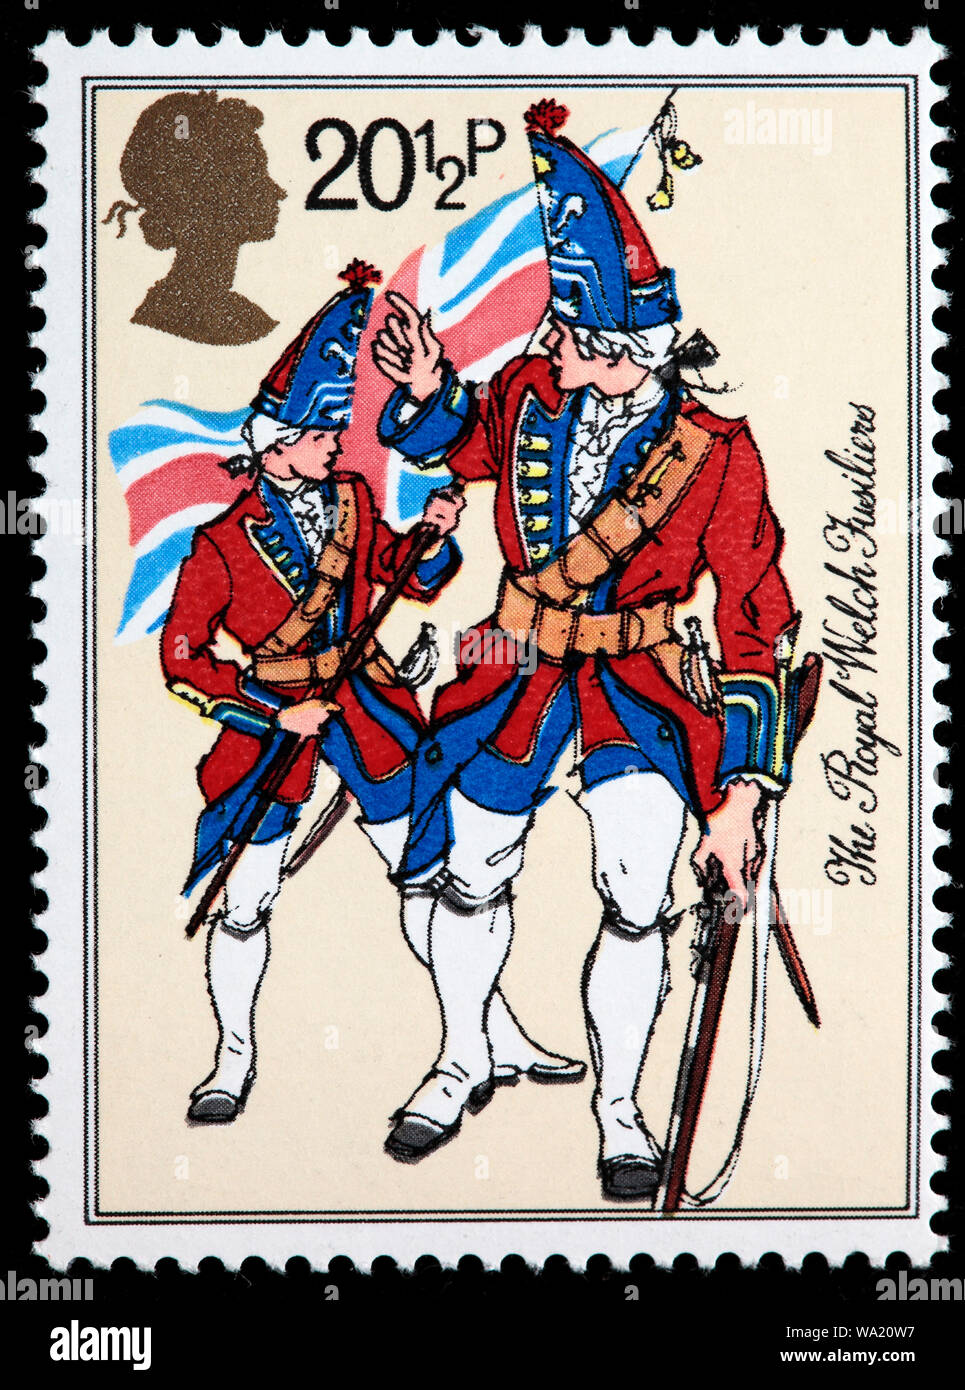 Royal Welch Fusiliers, uniforme de l'armée britannique, timbre-poste, UK, 1983 Banque D'Images